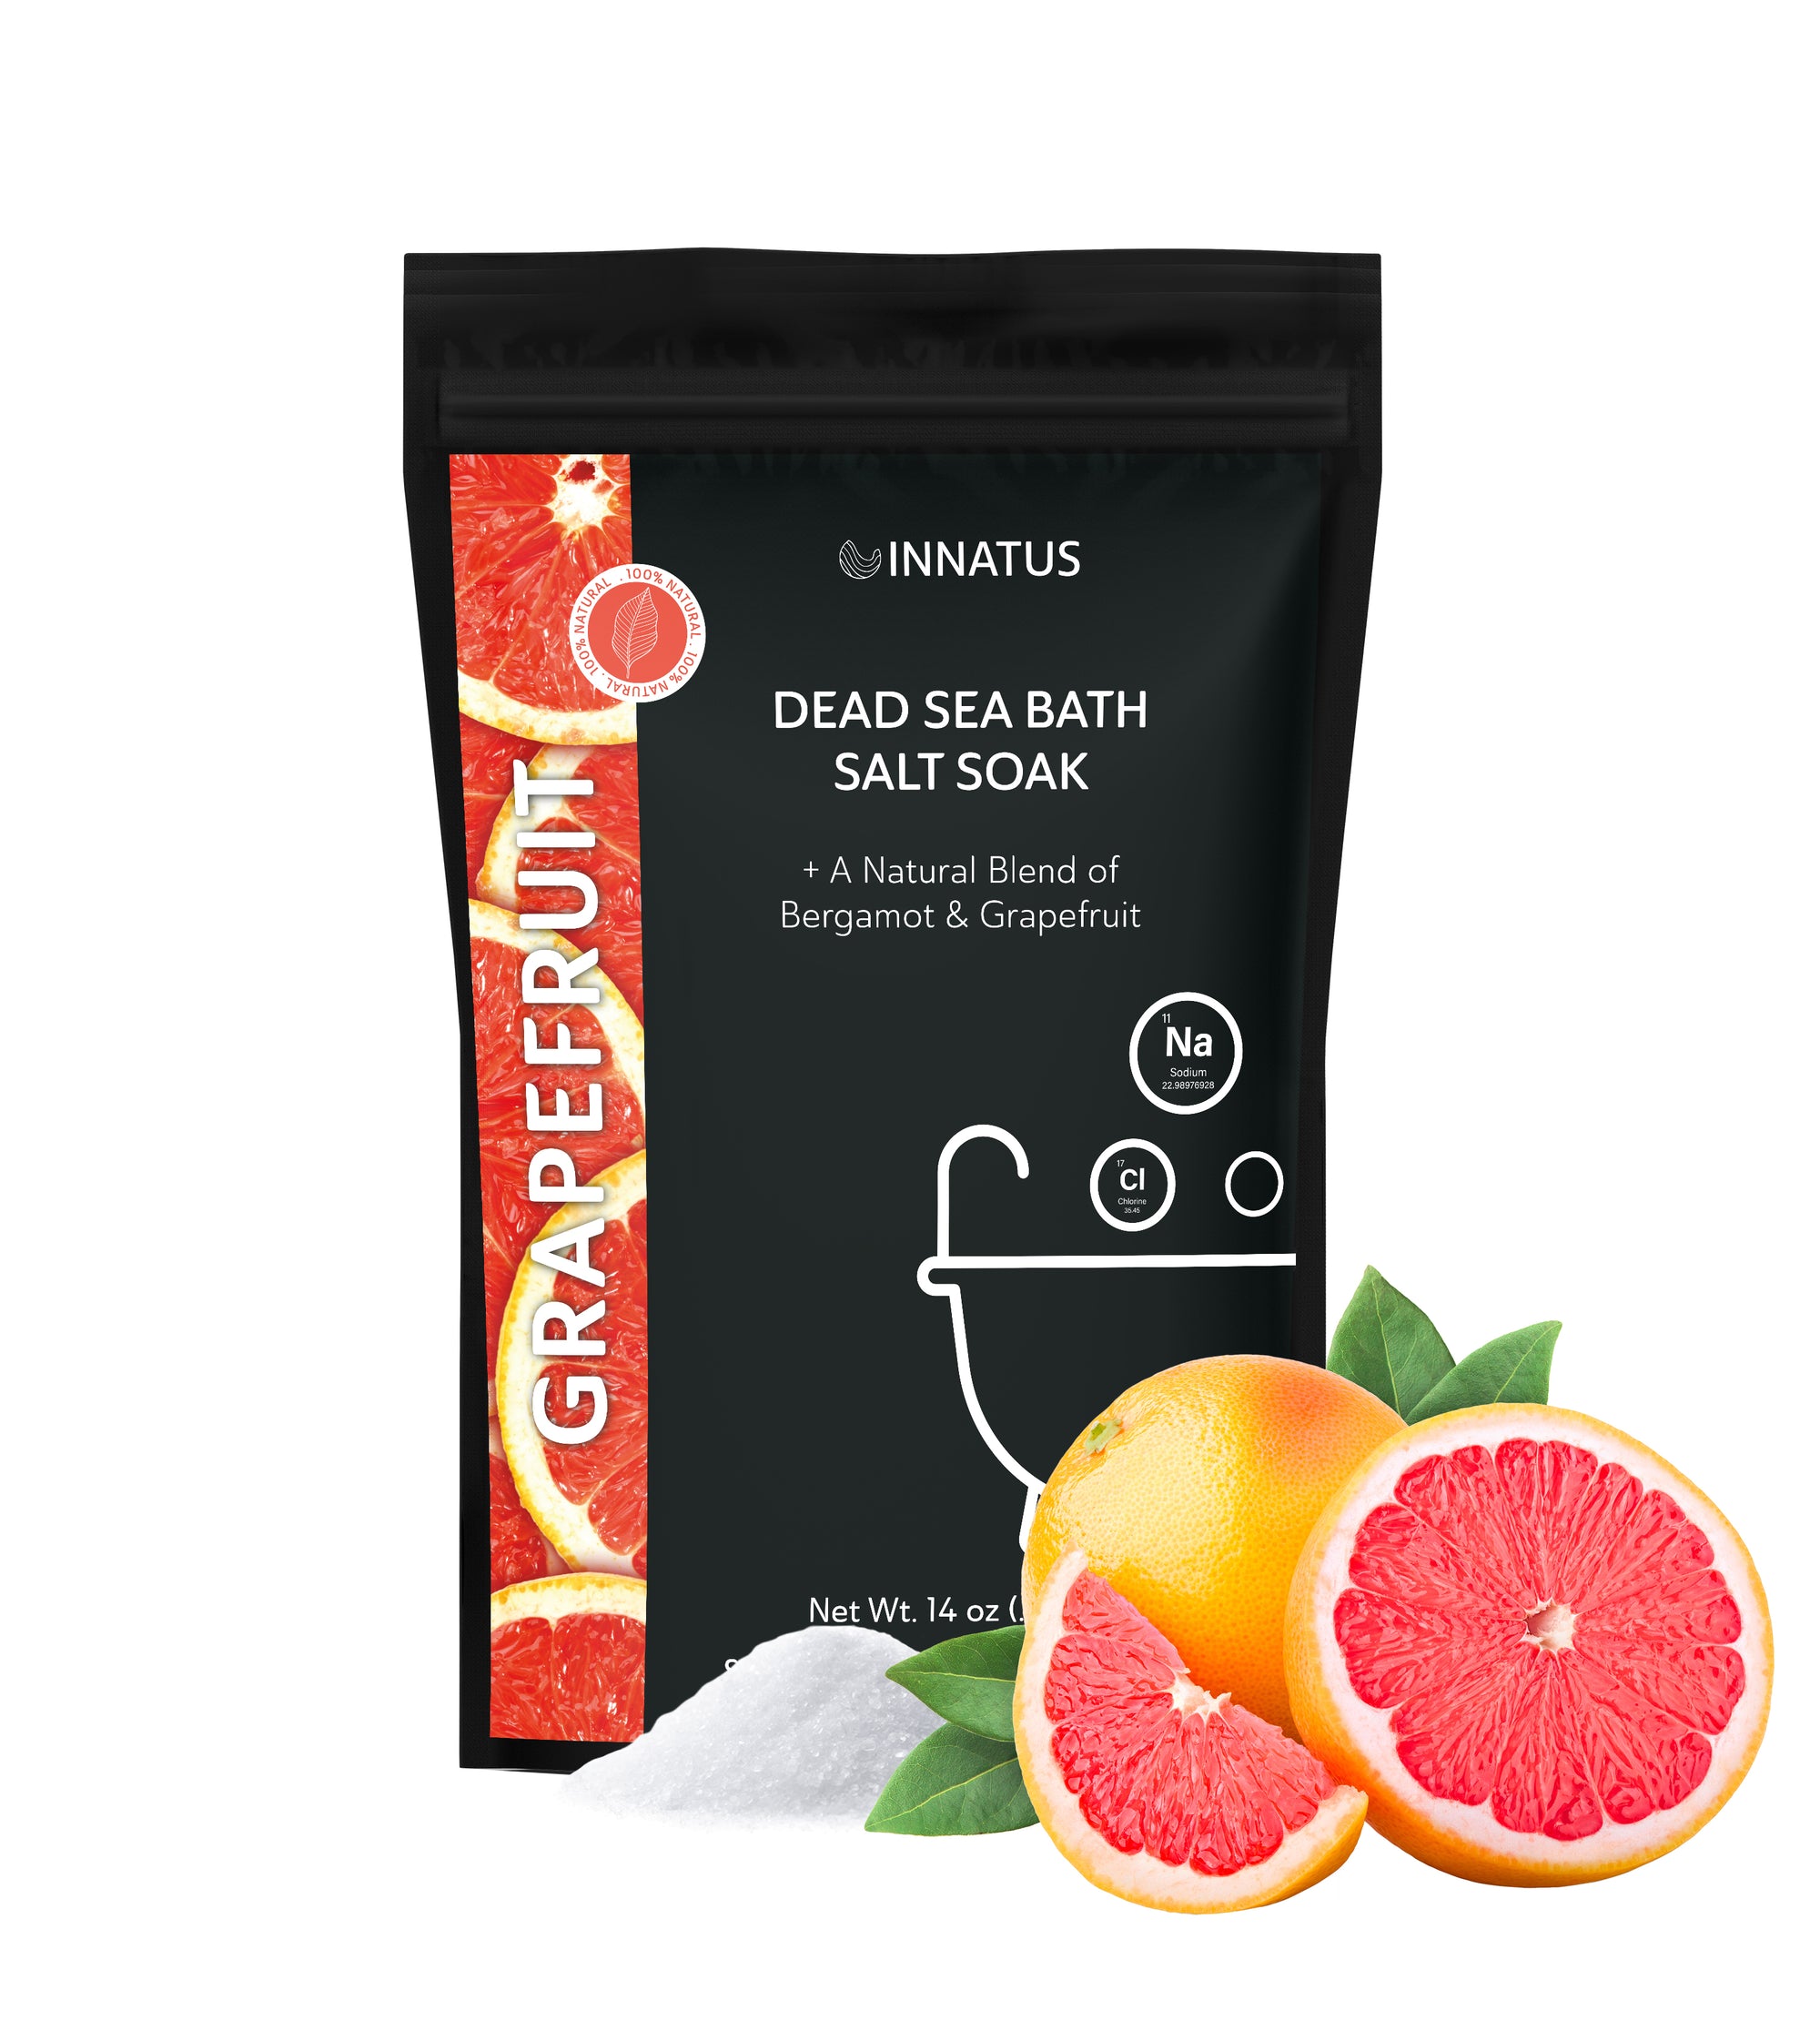 Dead sea Grapefruit bath salt soak with 21 minerals